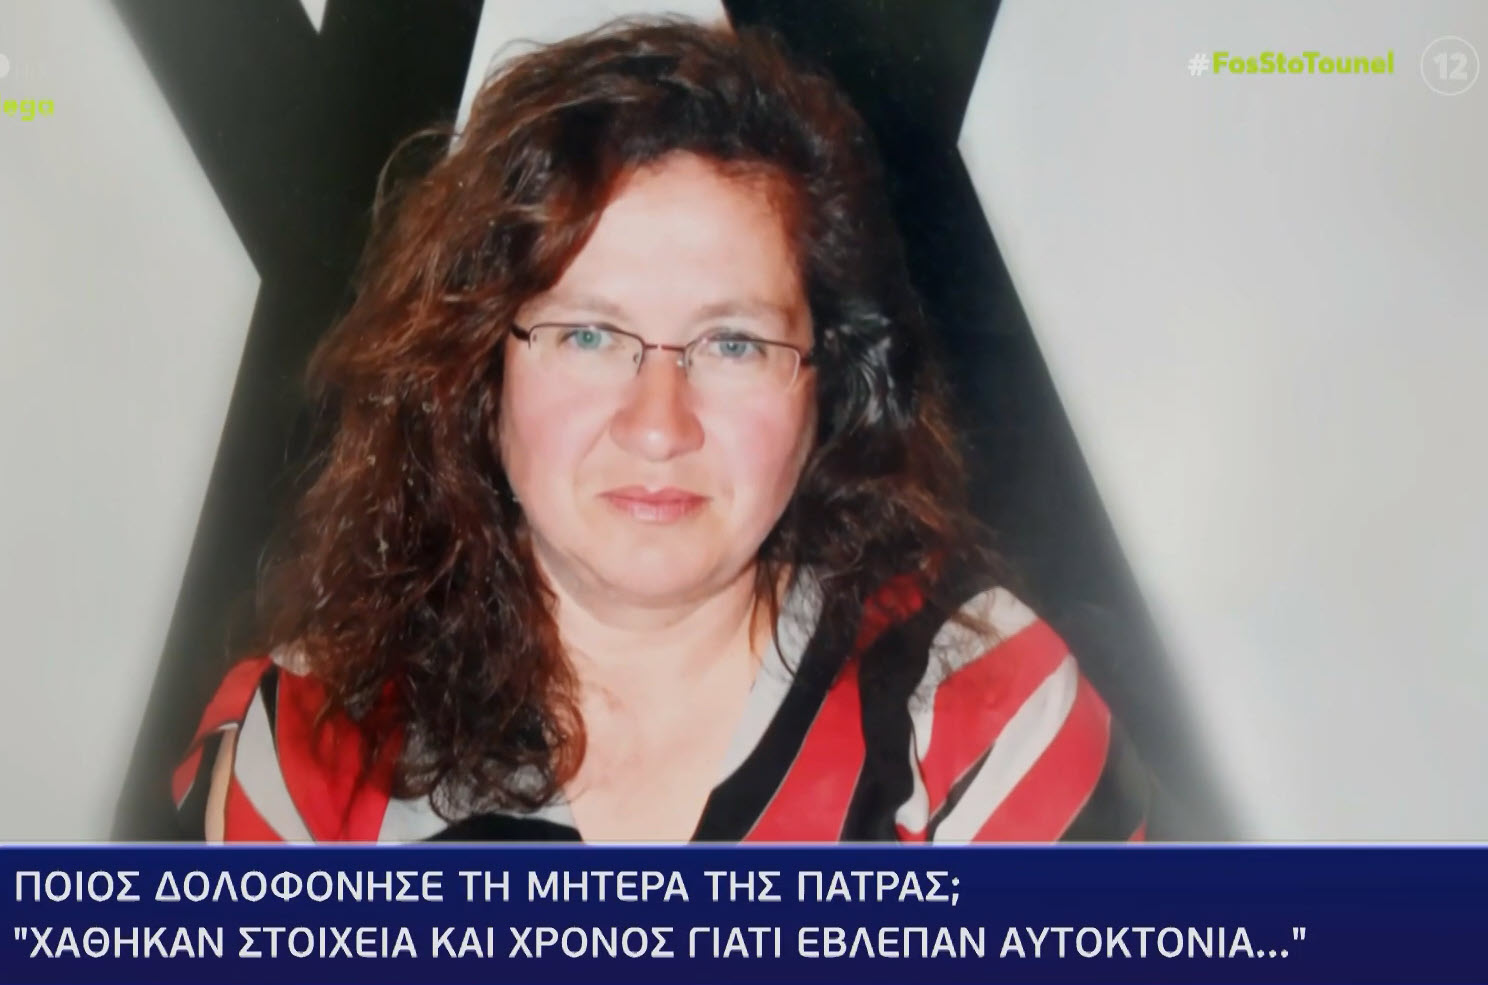 Ποιός δολοφόνησε τη μητέρα από την Πάτρα; - Χάθηκαν στοιχεία και χρόνος γιατί "έβλεπαν" αυτοκτονία